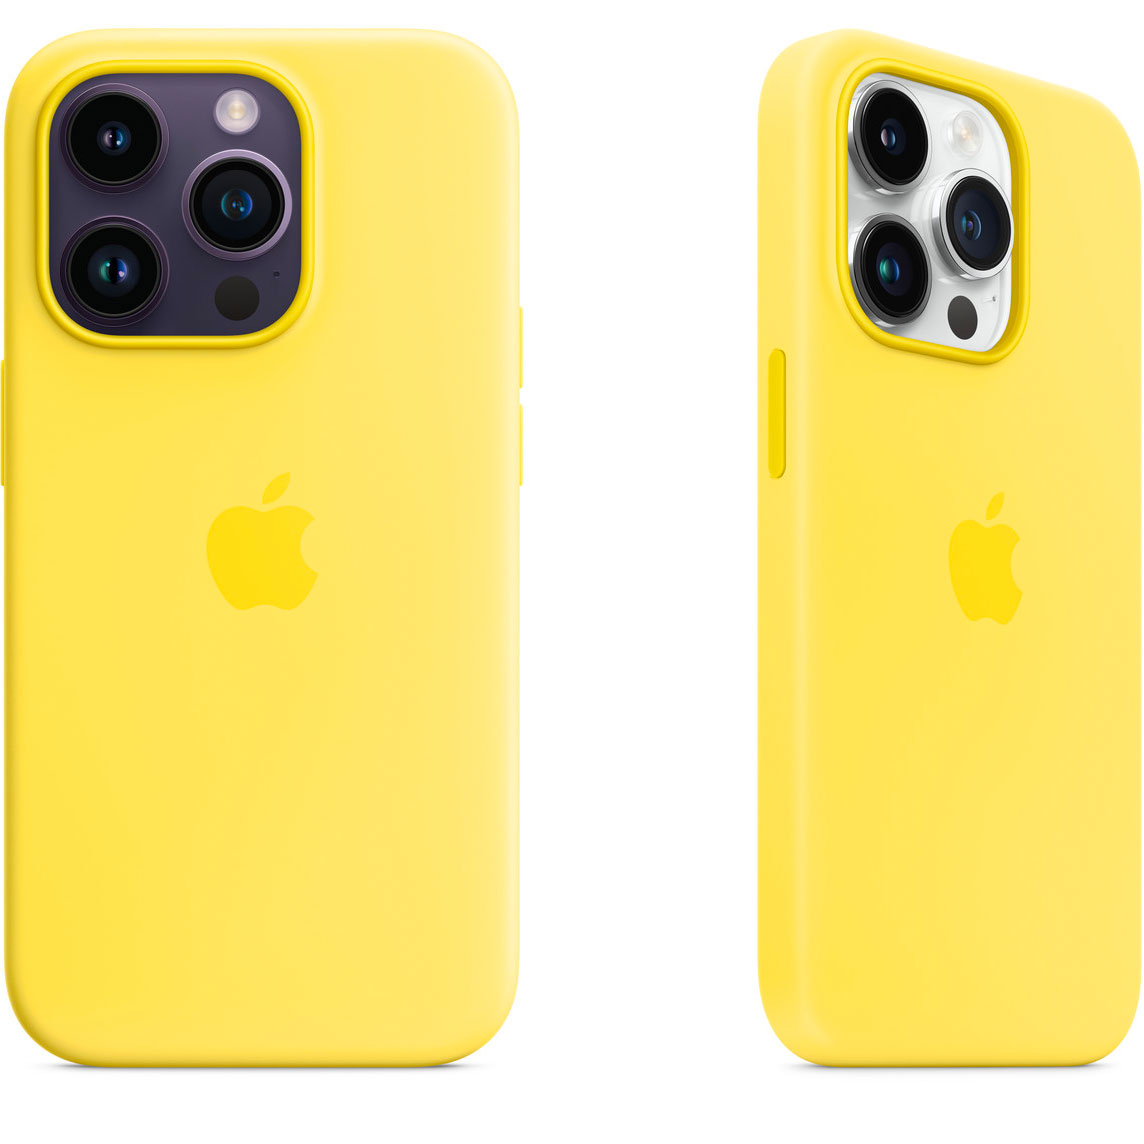 Funda de silicona de Apple en color amarillo